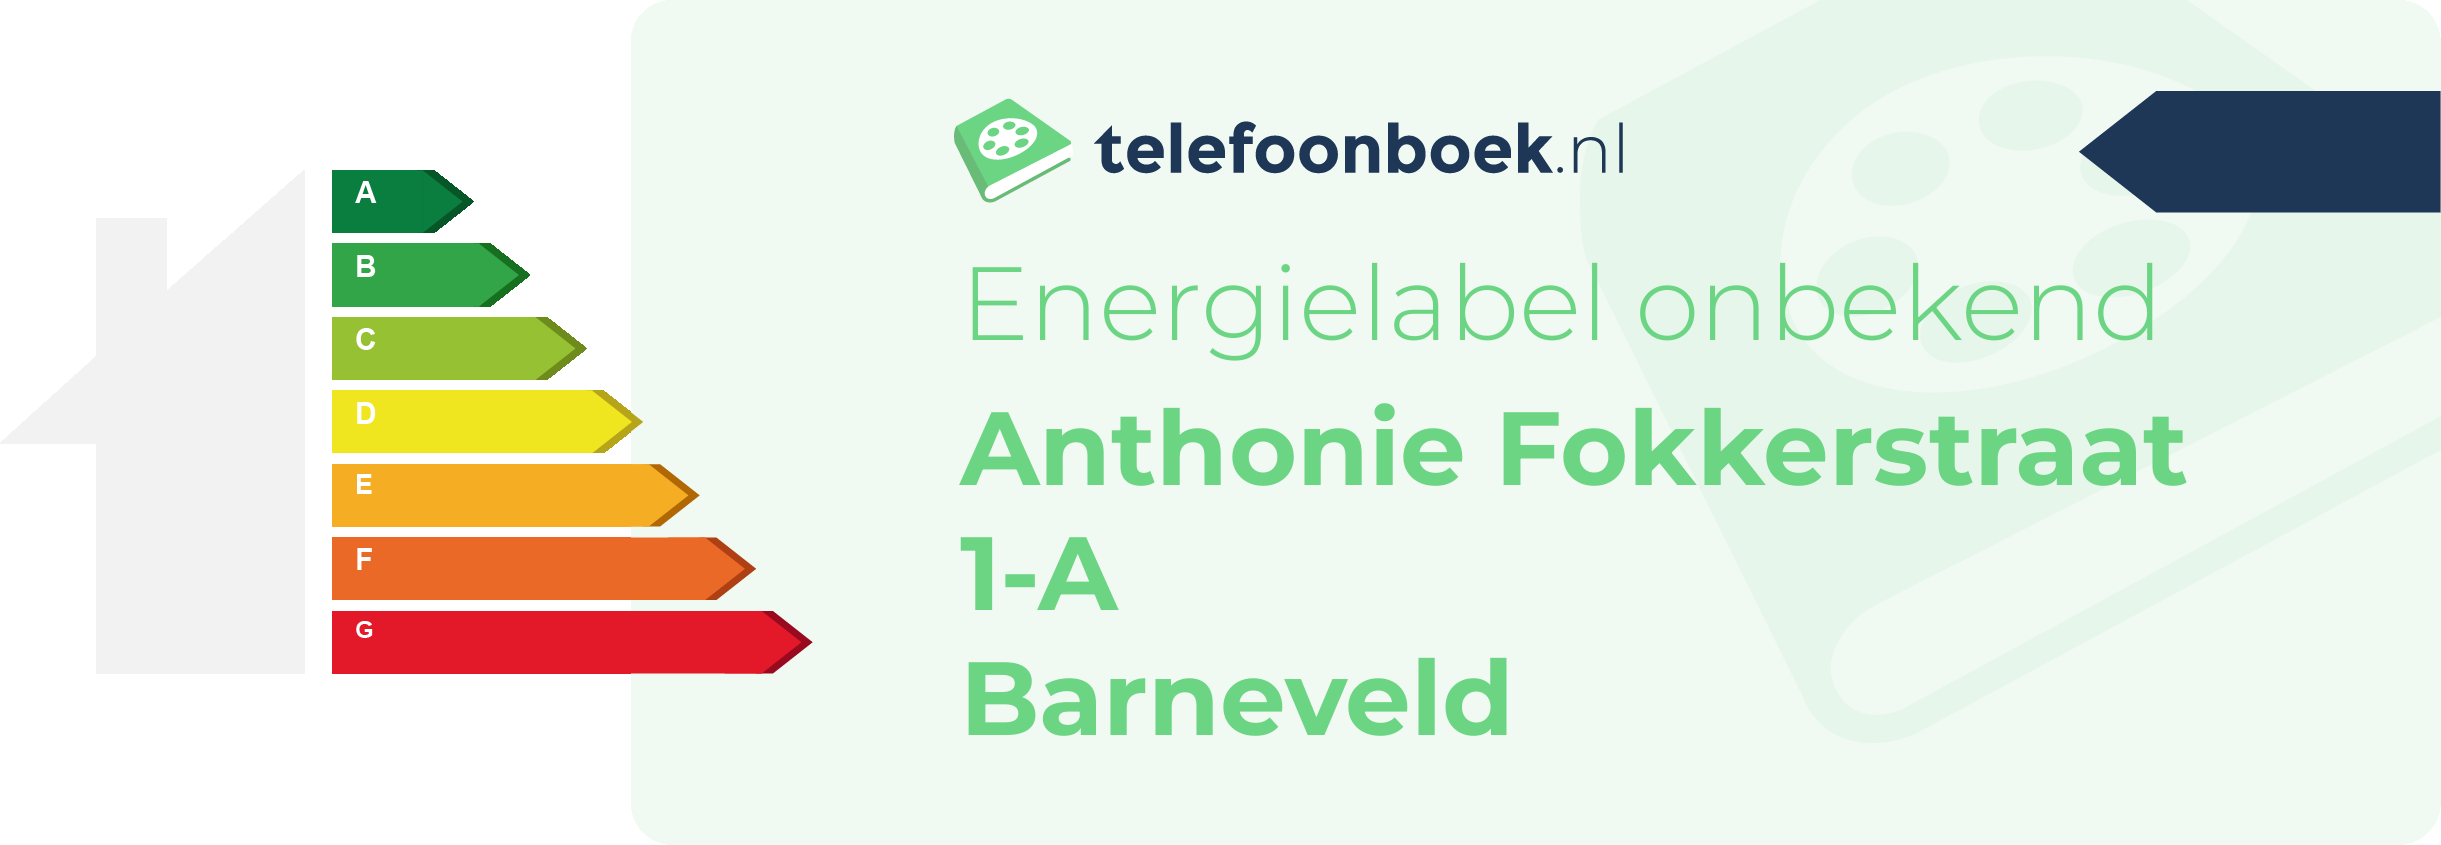 Energielabel Anthonie Fokkerstraat 1-A Barneveld